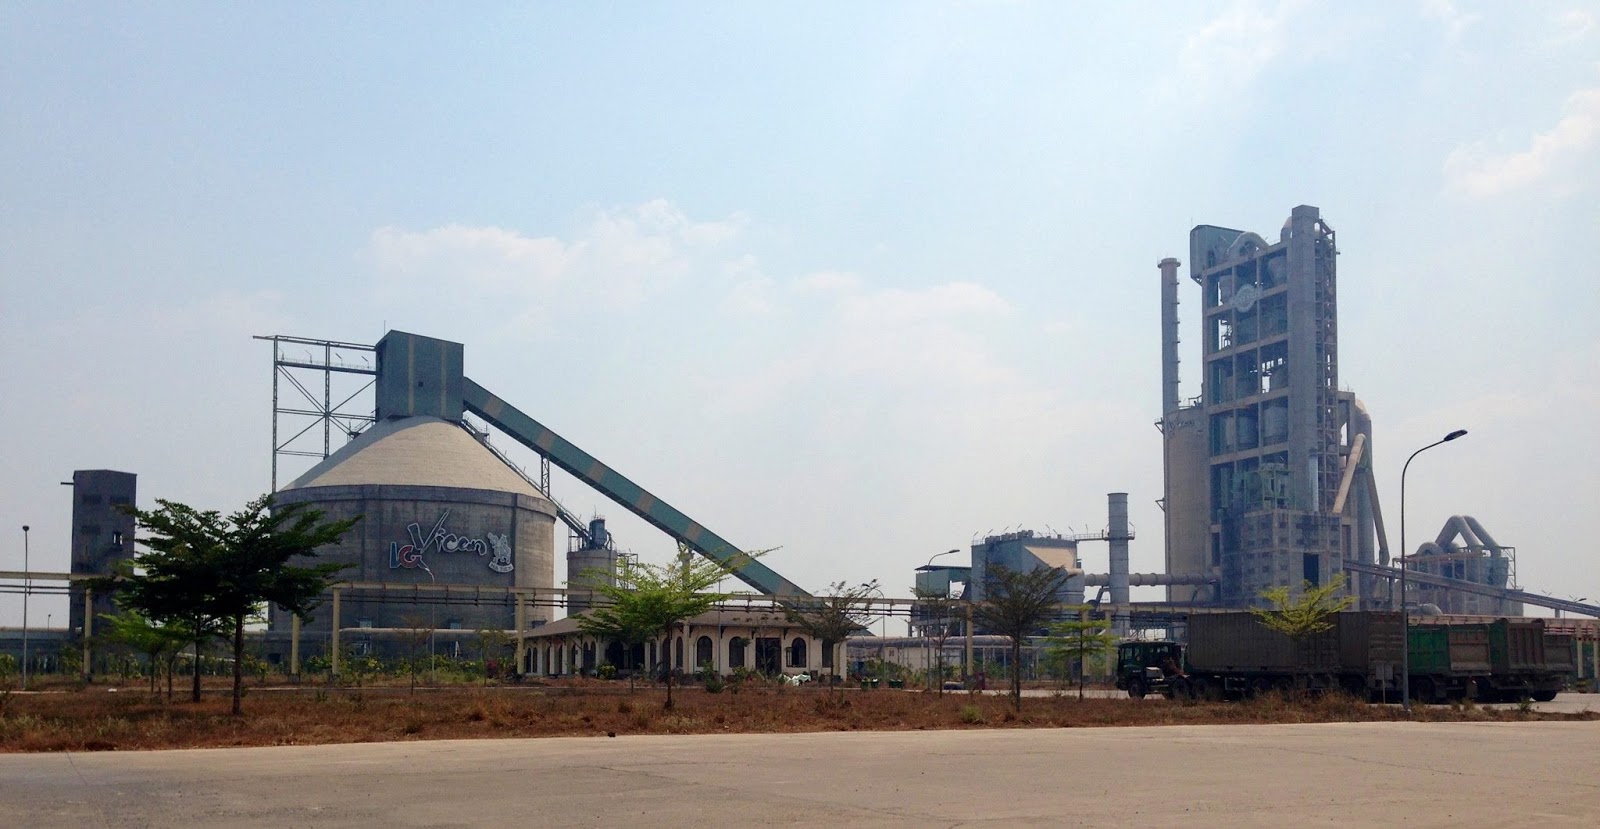 Nhà máy xi măng Bỉm Sơn